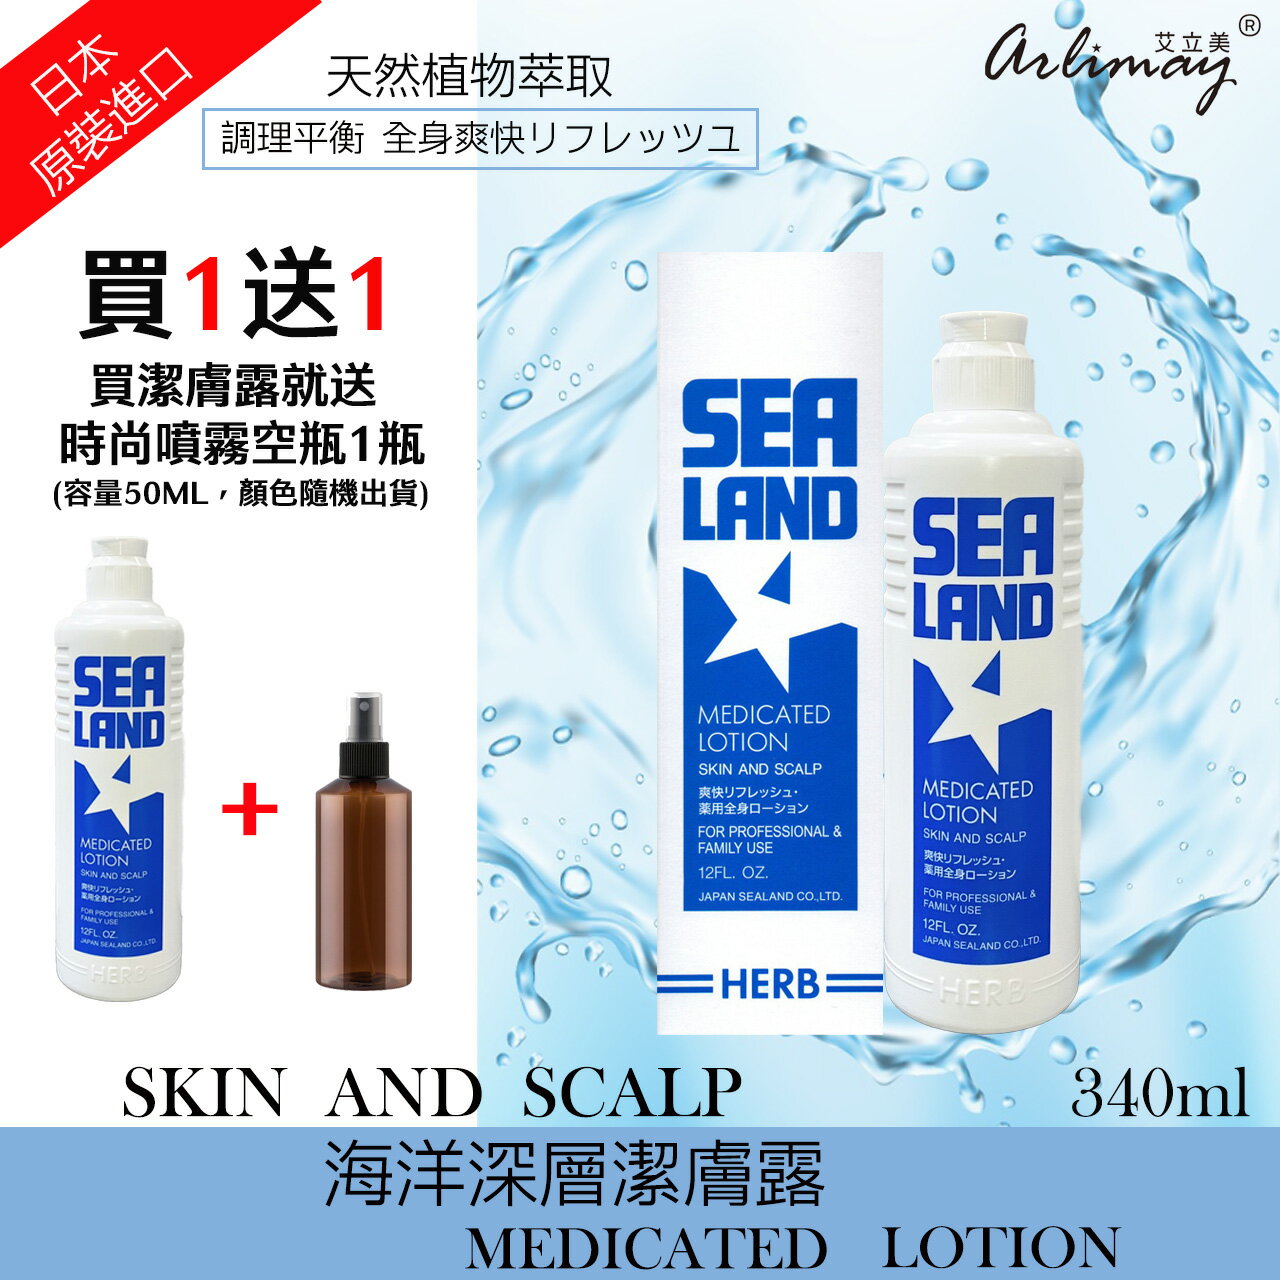 SEALAND海洋深層潔膚露340ml 頭皮護理 肌膚舒緩 全身適用 日本原裝進口公司貨